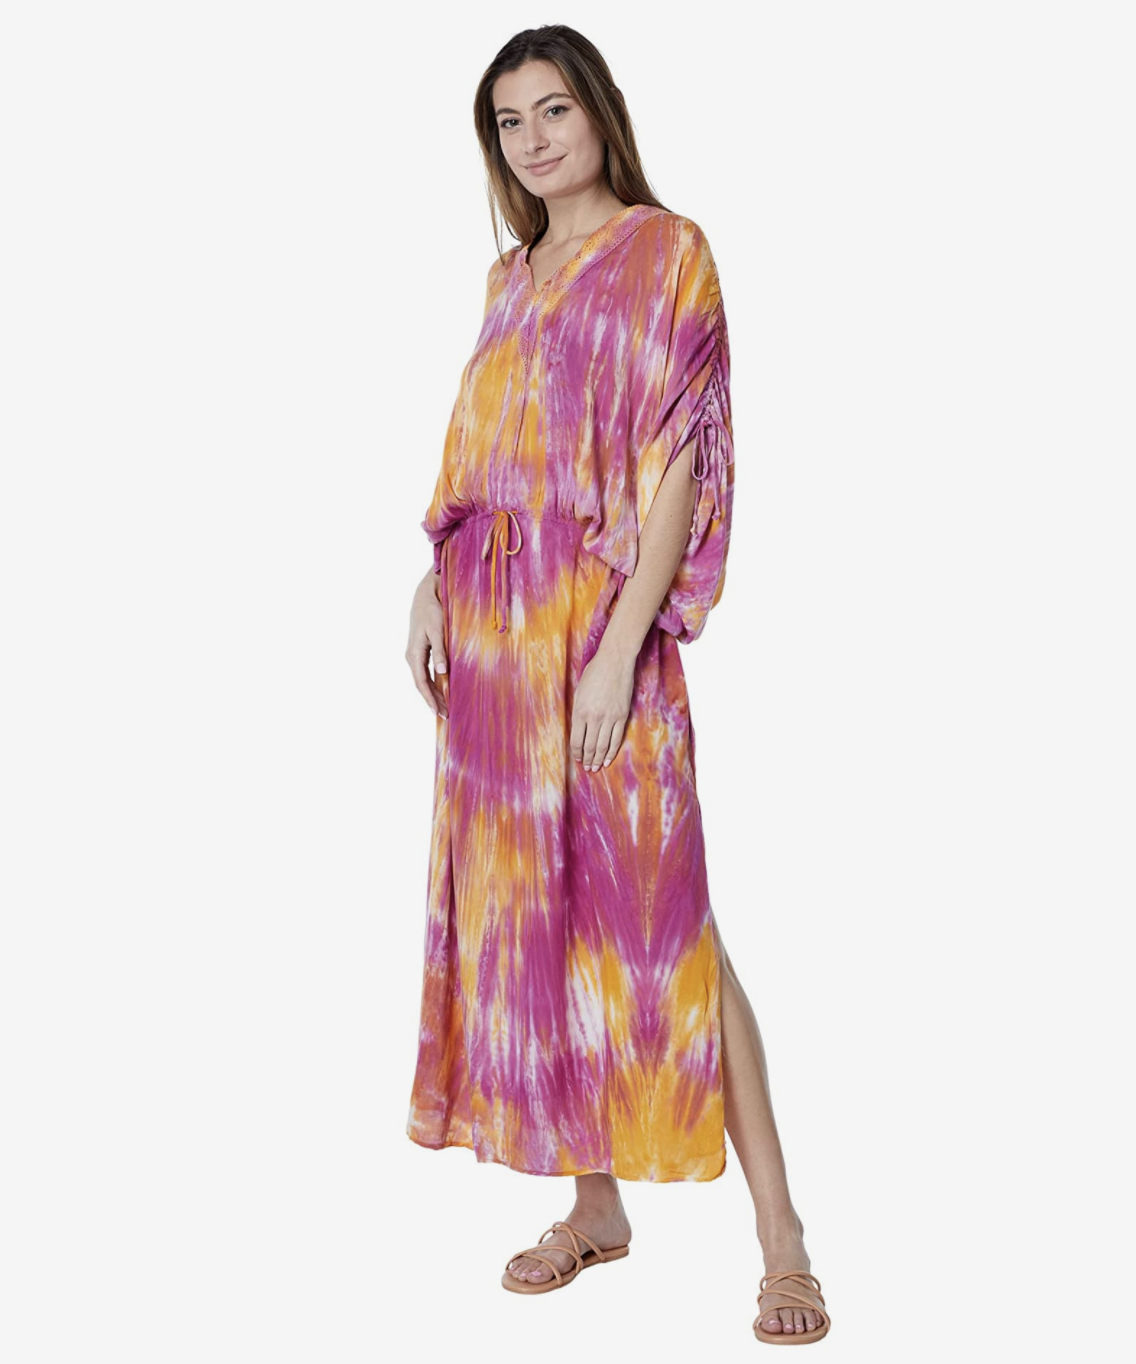 YFB Athena Dress - Squash Blossom Boutique